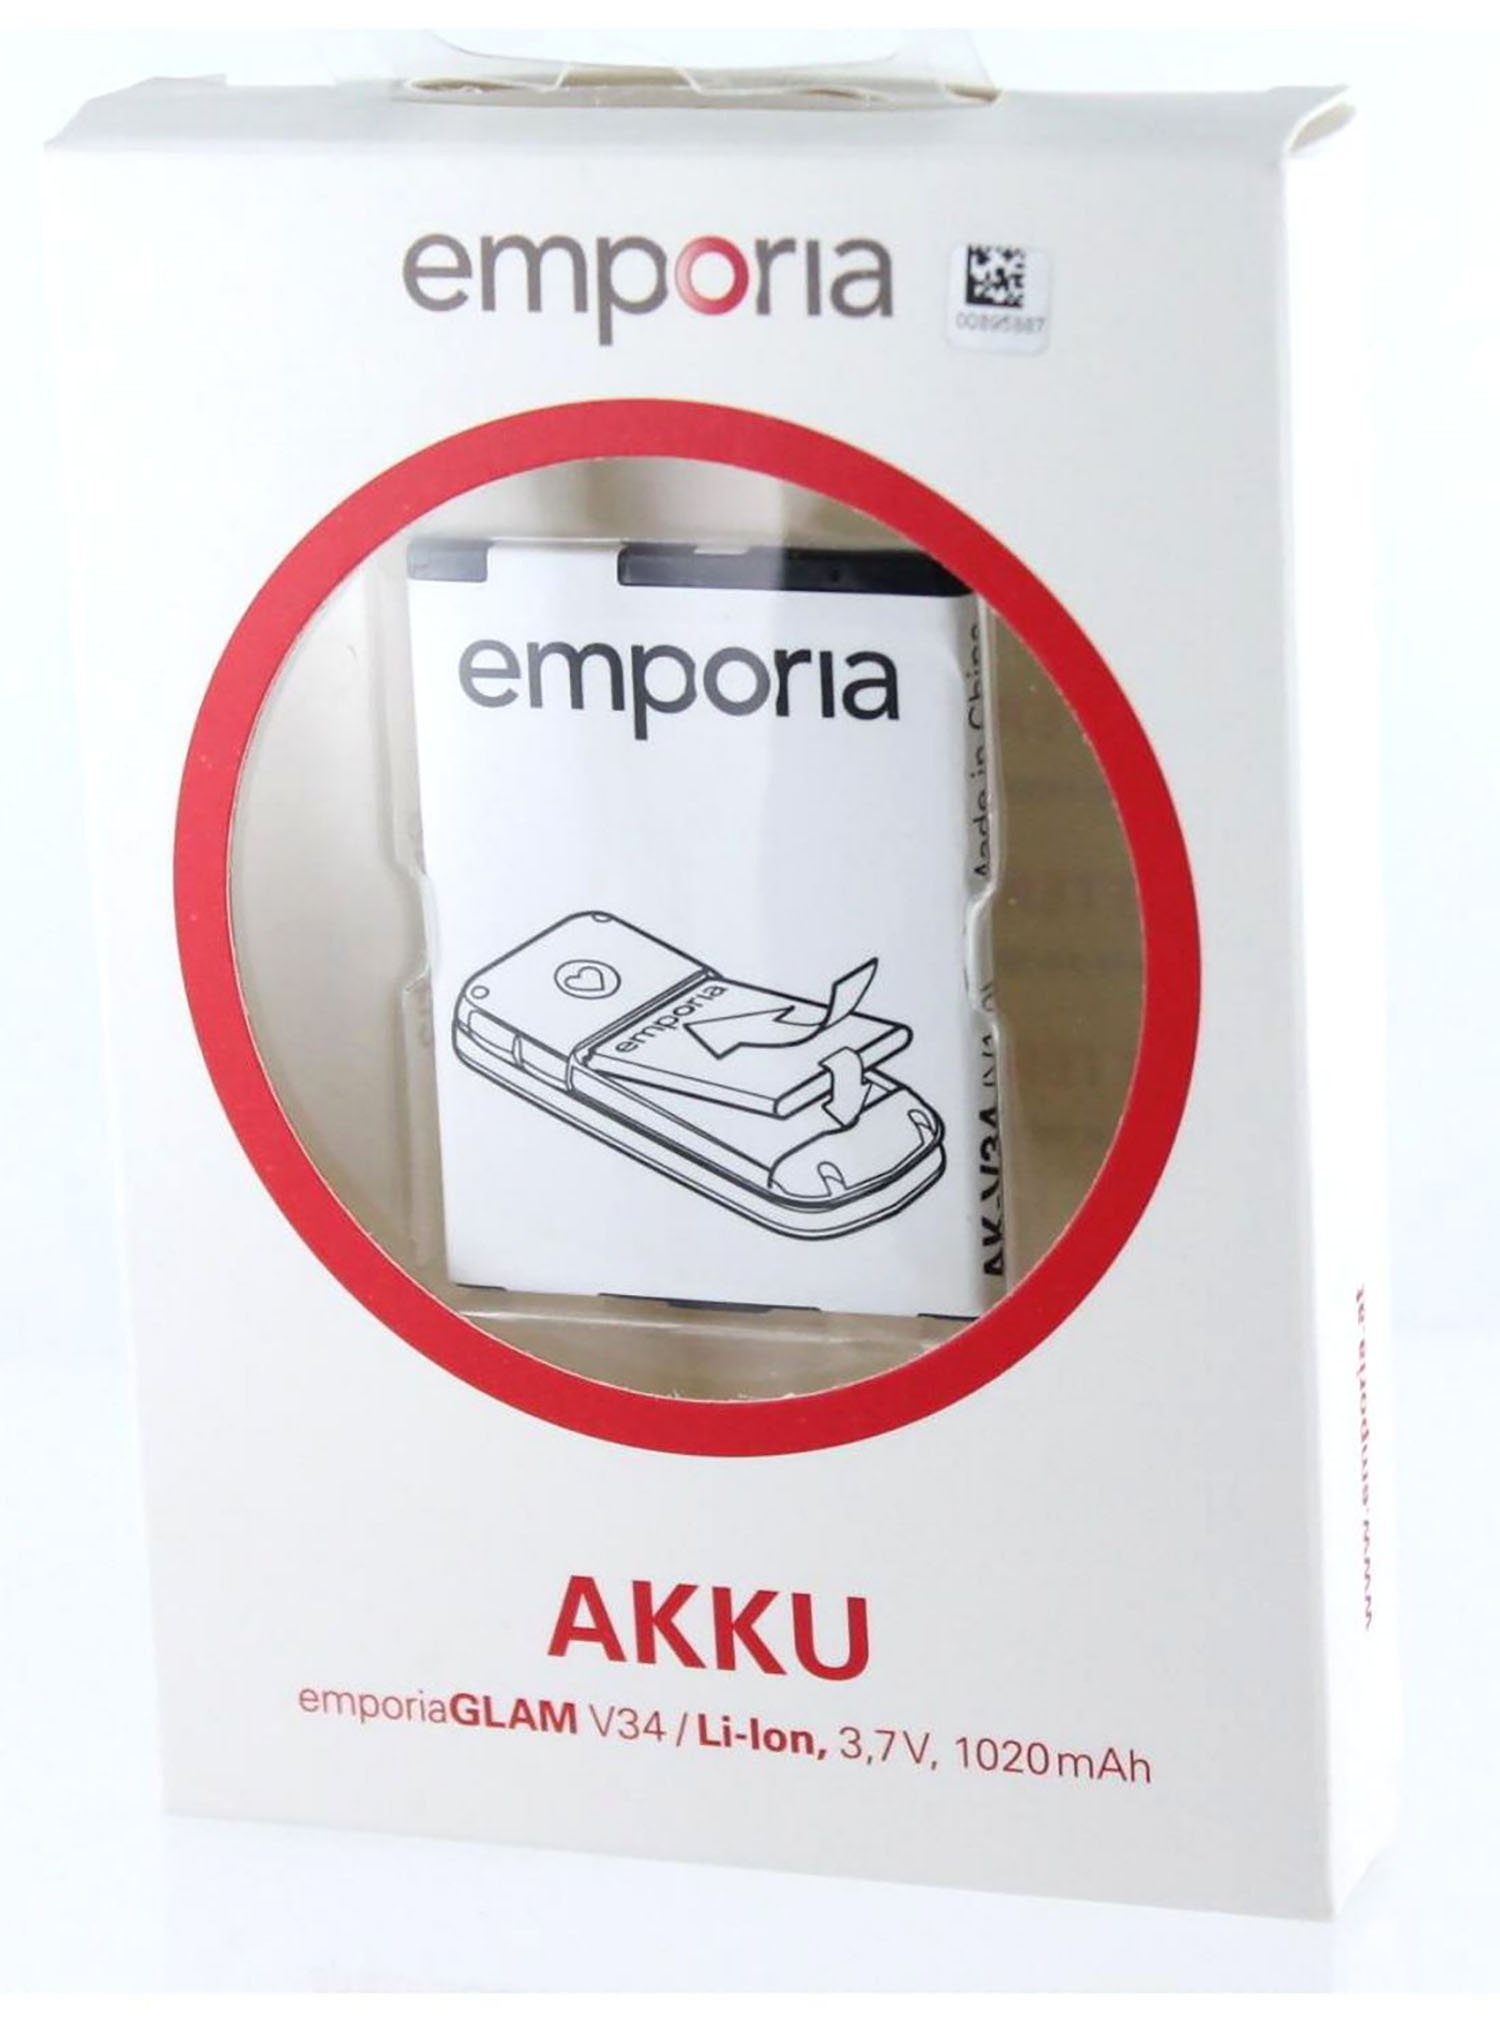 Akkupacks Akku mAh AK-V34 für Emporia 1020 Emporia Akku Original